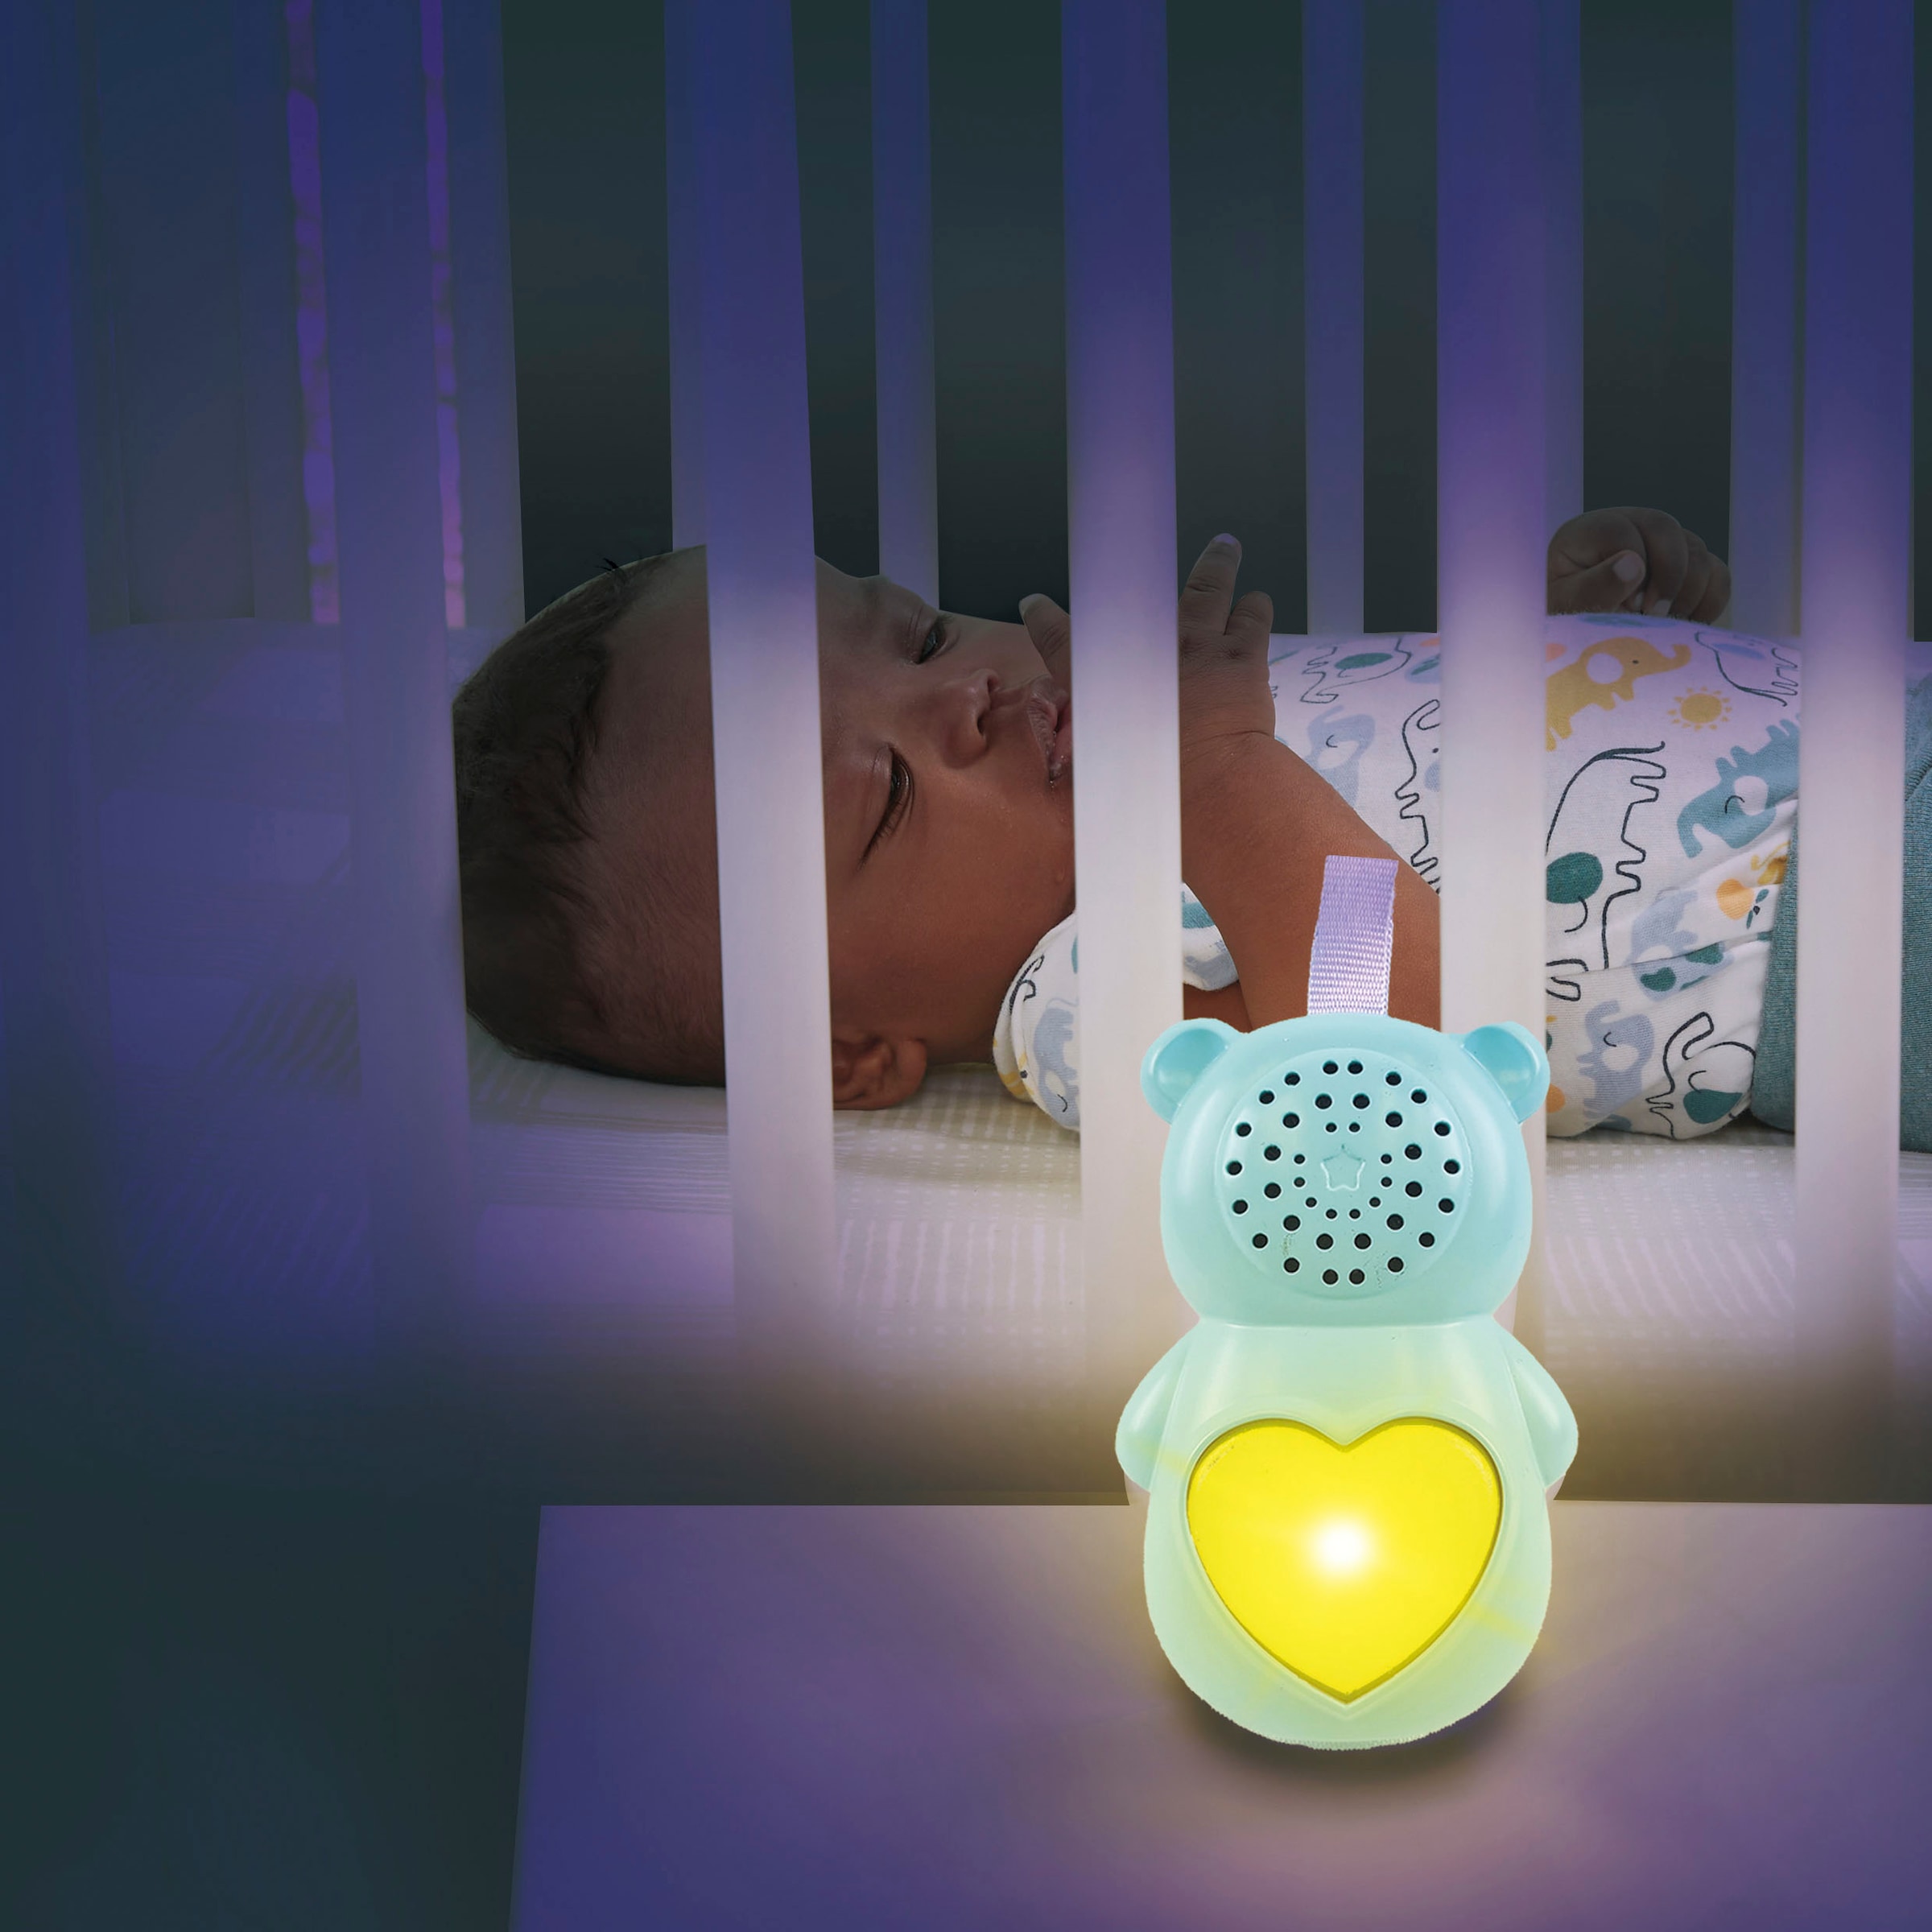 Vtech® Kuscheltier »Vtech Baby, Schlummerbärchen«, mit Licht- und Soundeffekten